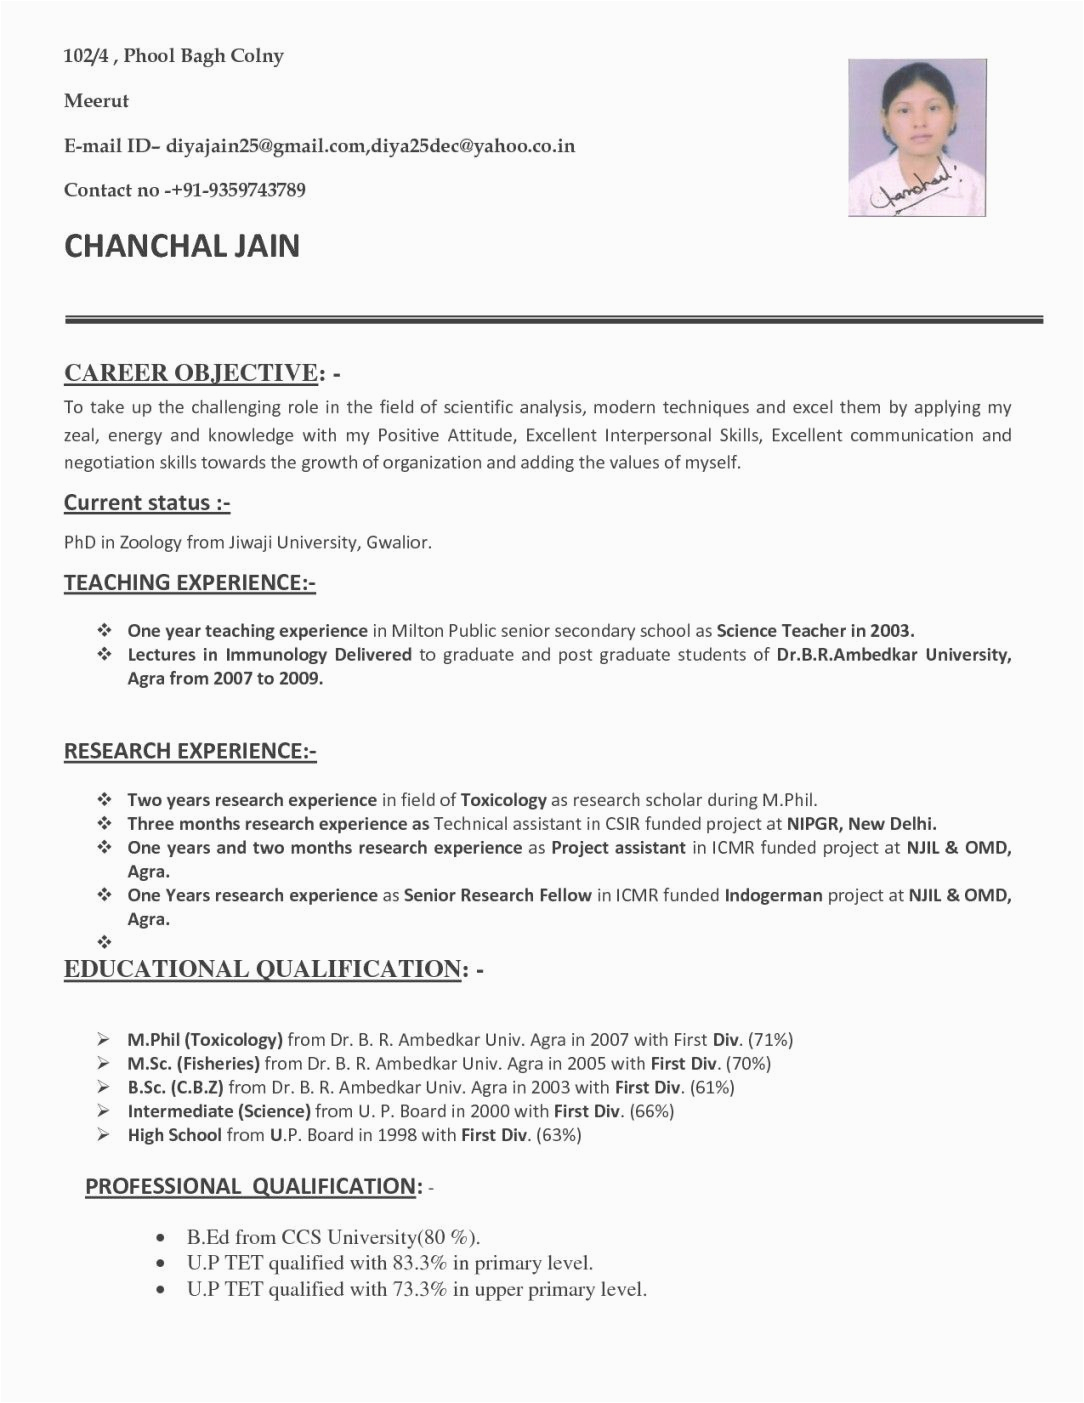 Sample Of Resume for Job Application for Teacher Resume for Fresher Teacher Job Application Briefkopf